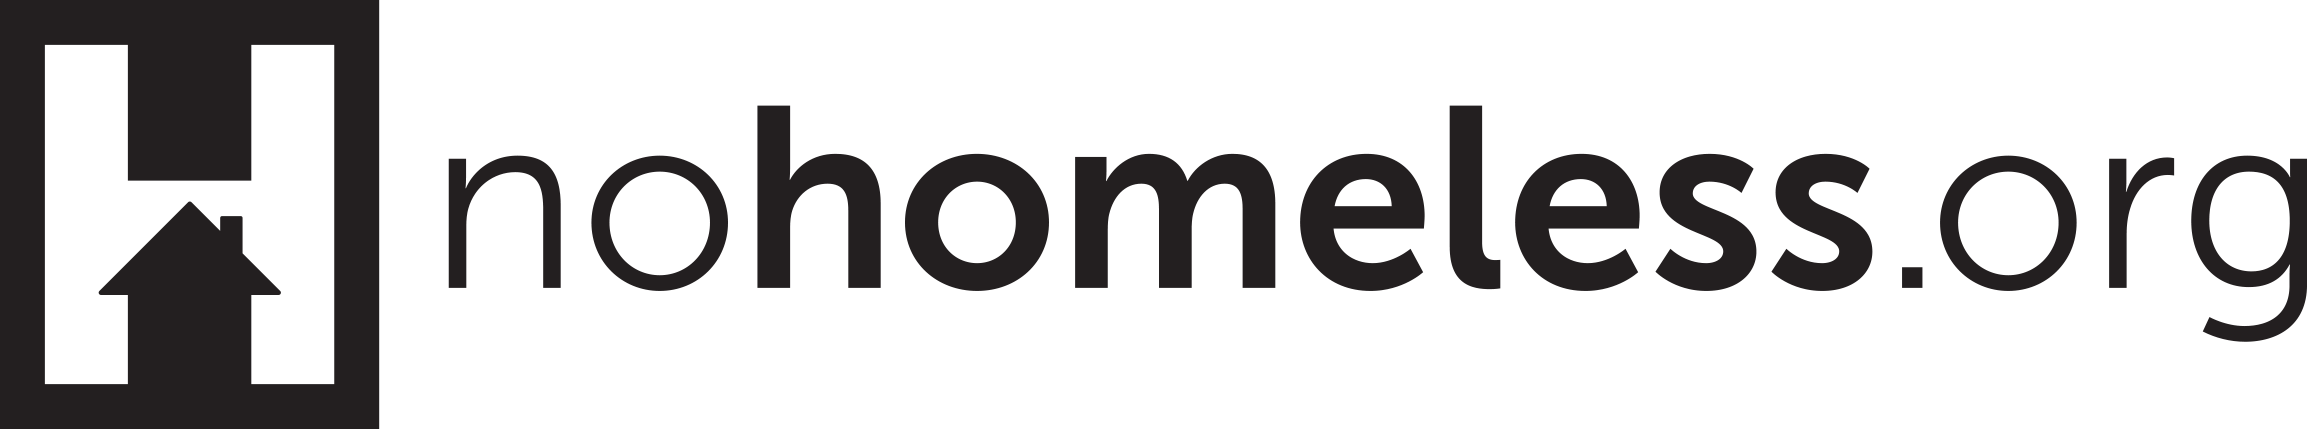 No Homeless, Inc. logo